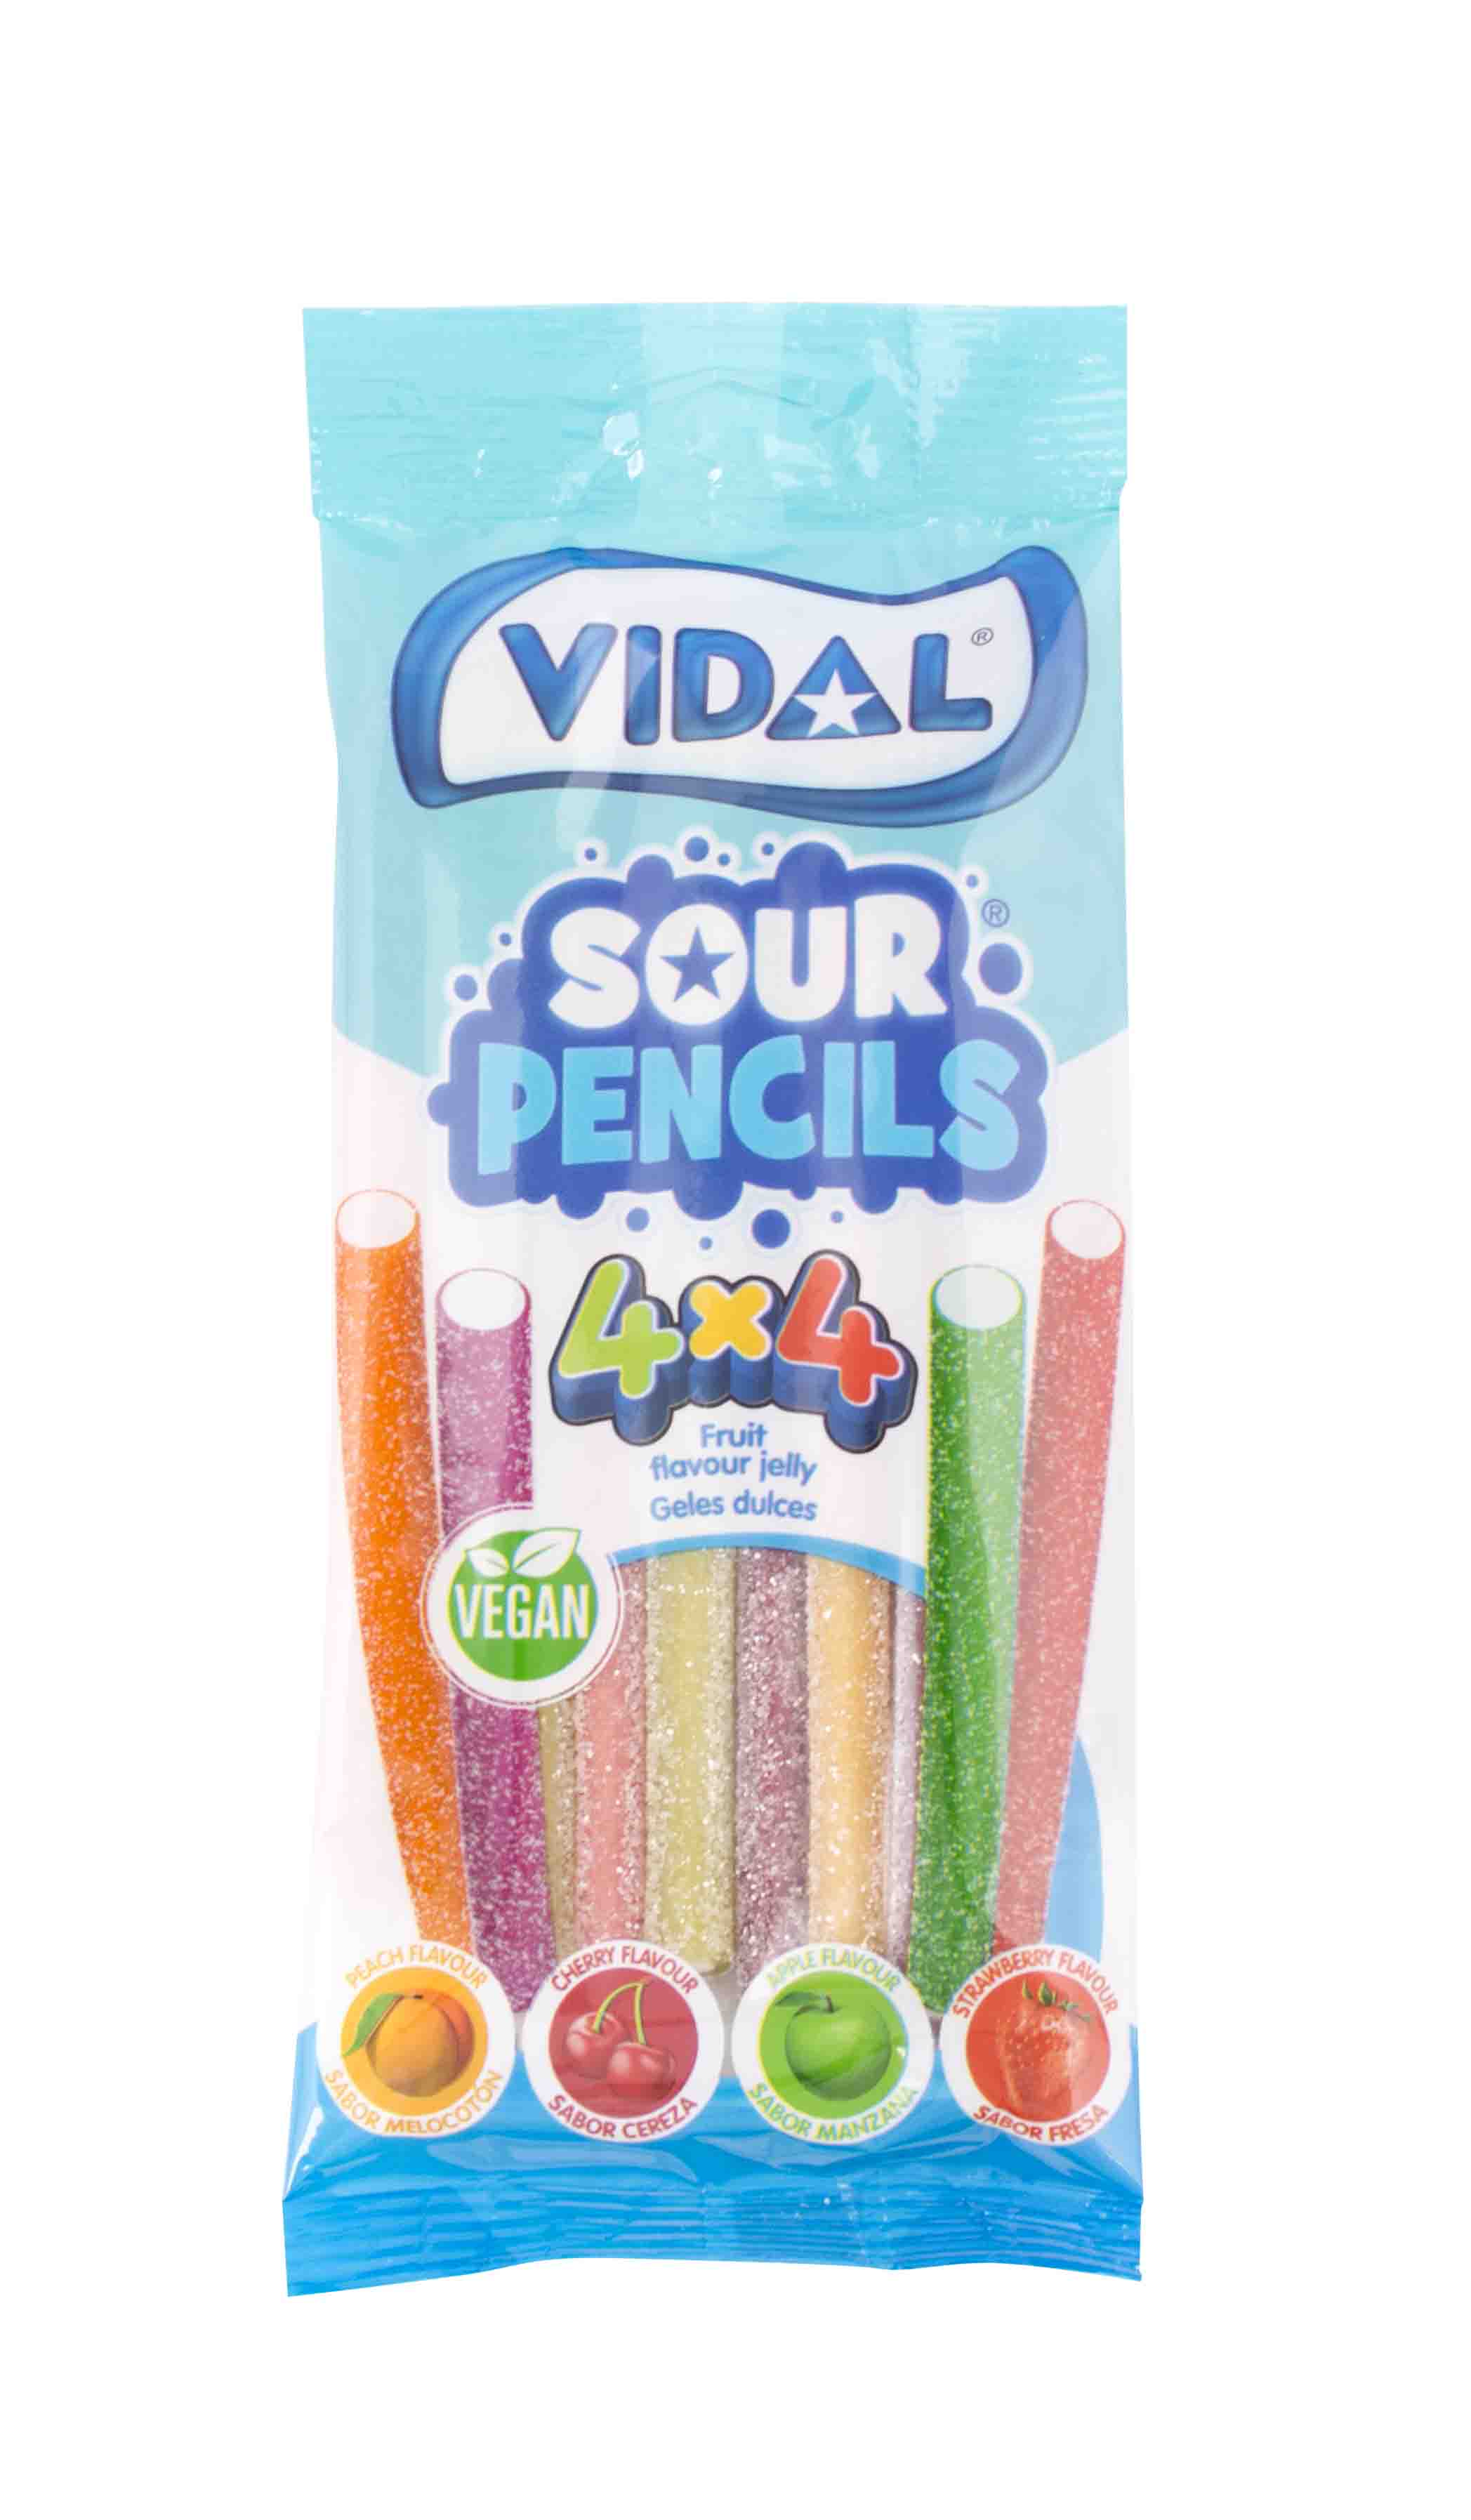 Sour Pencils 4x4 bag -4 příchutě kyselých pendreků 100g